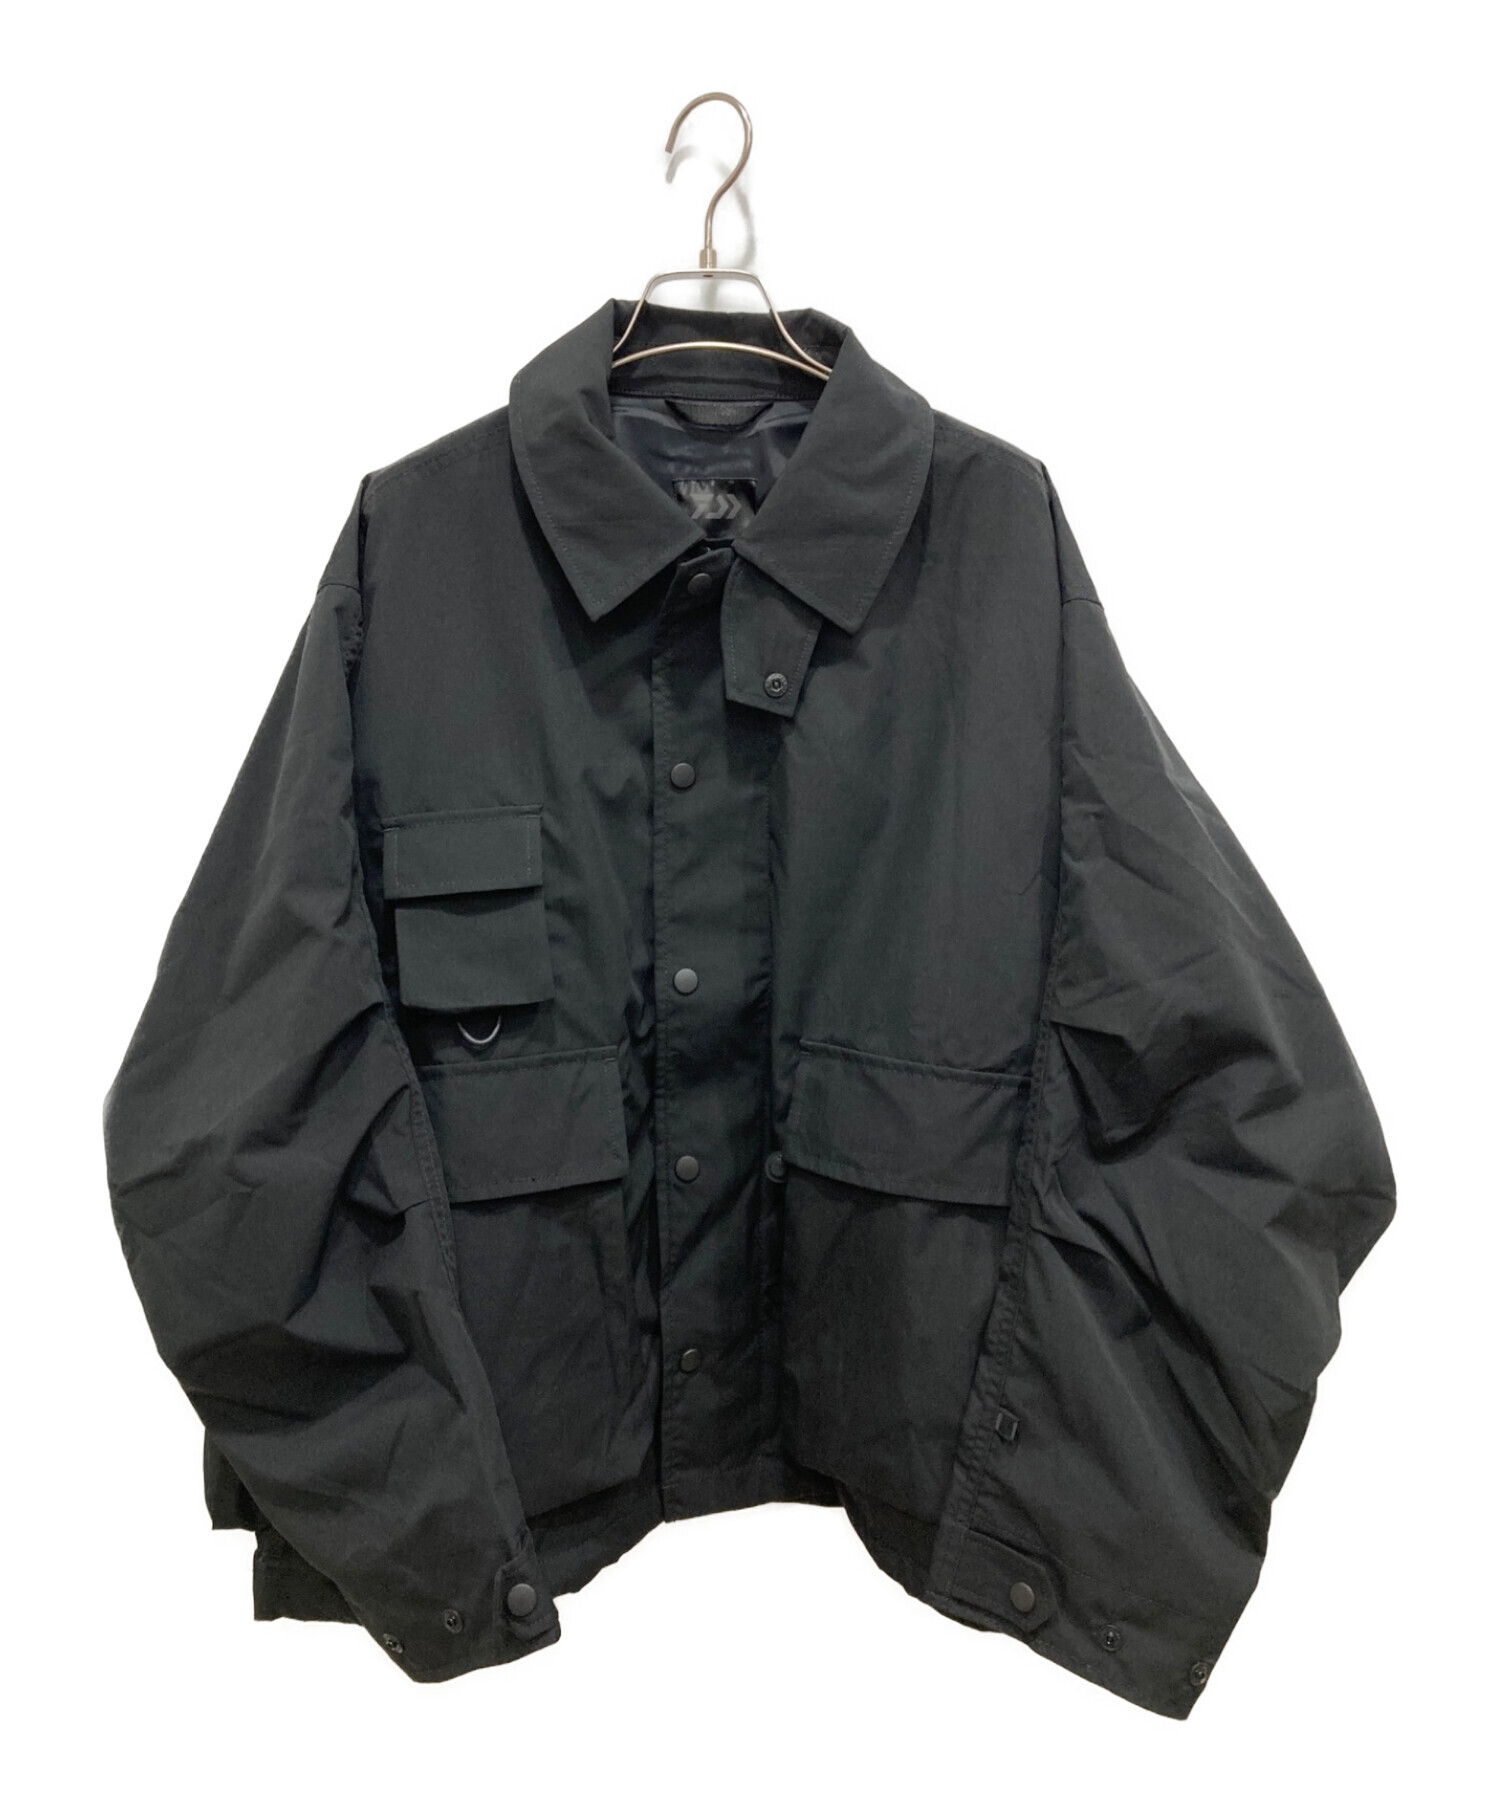 DAIWA PIER39 (ダイワ ピア39) L’ECHOPPE (レショップ) フィッシングジャケット ブラック サイズ:M